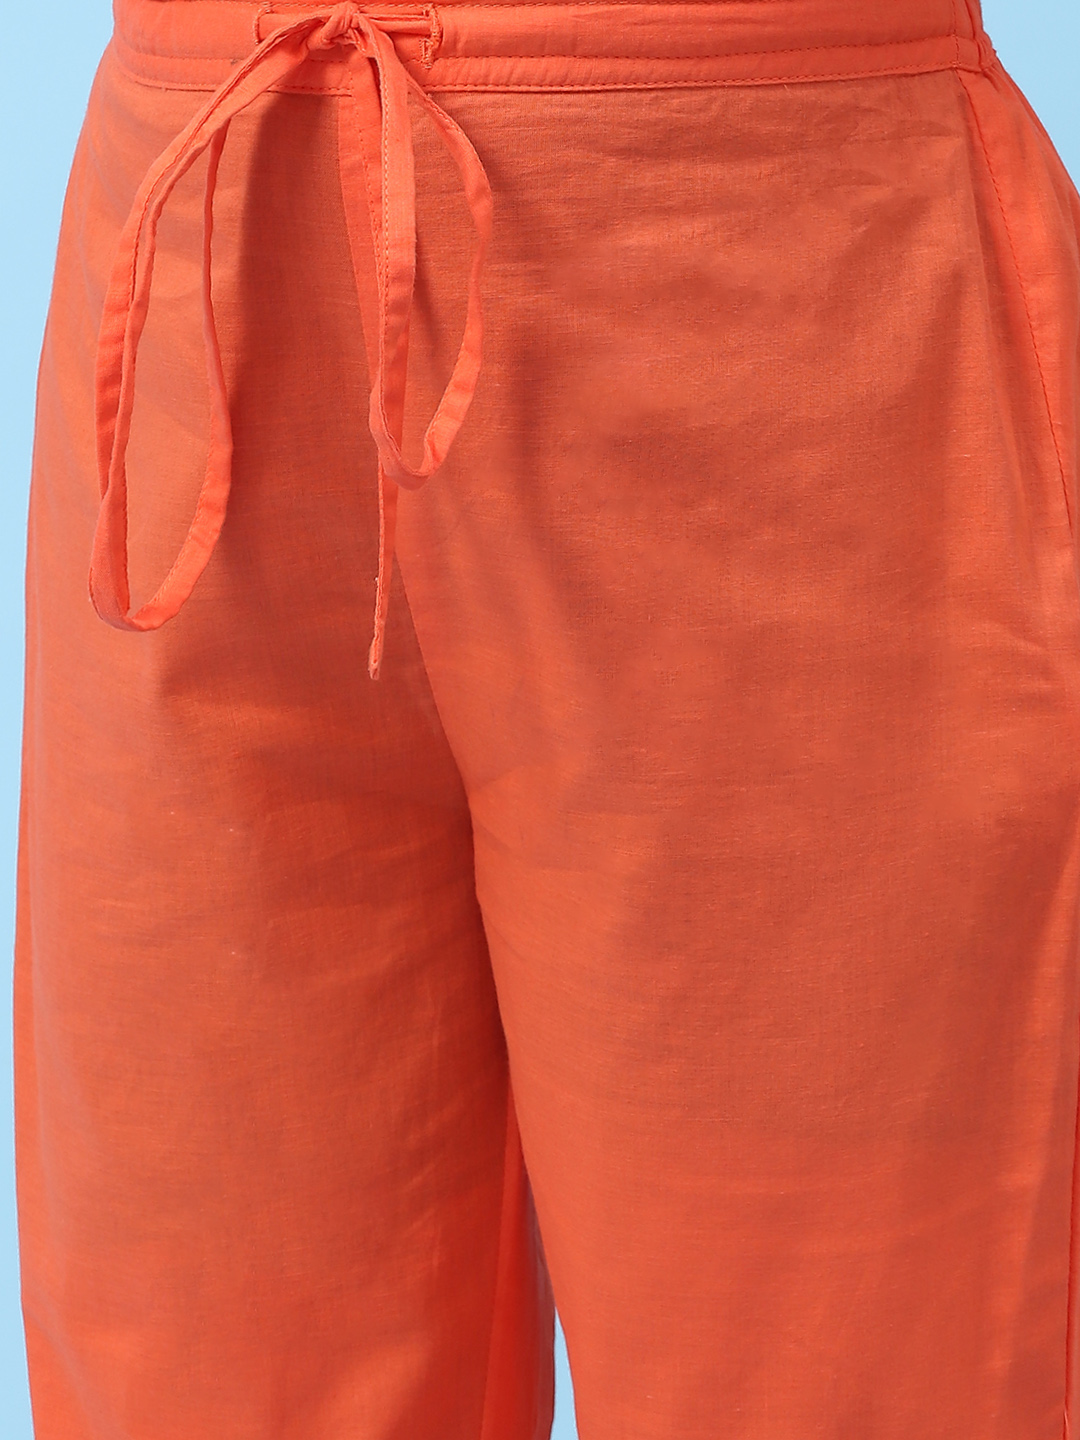 Orange Art Silk Straight Kurta Regular Pants Suit Set image number 2